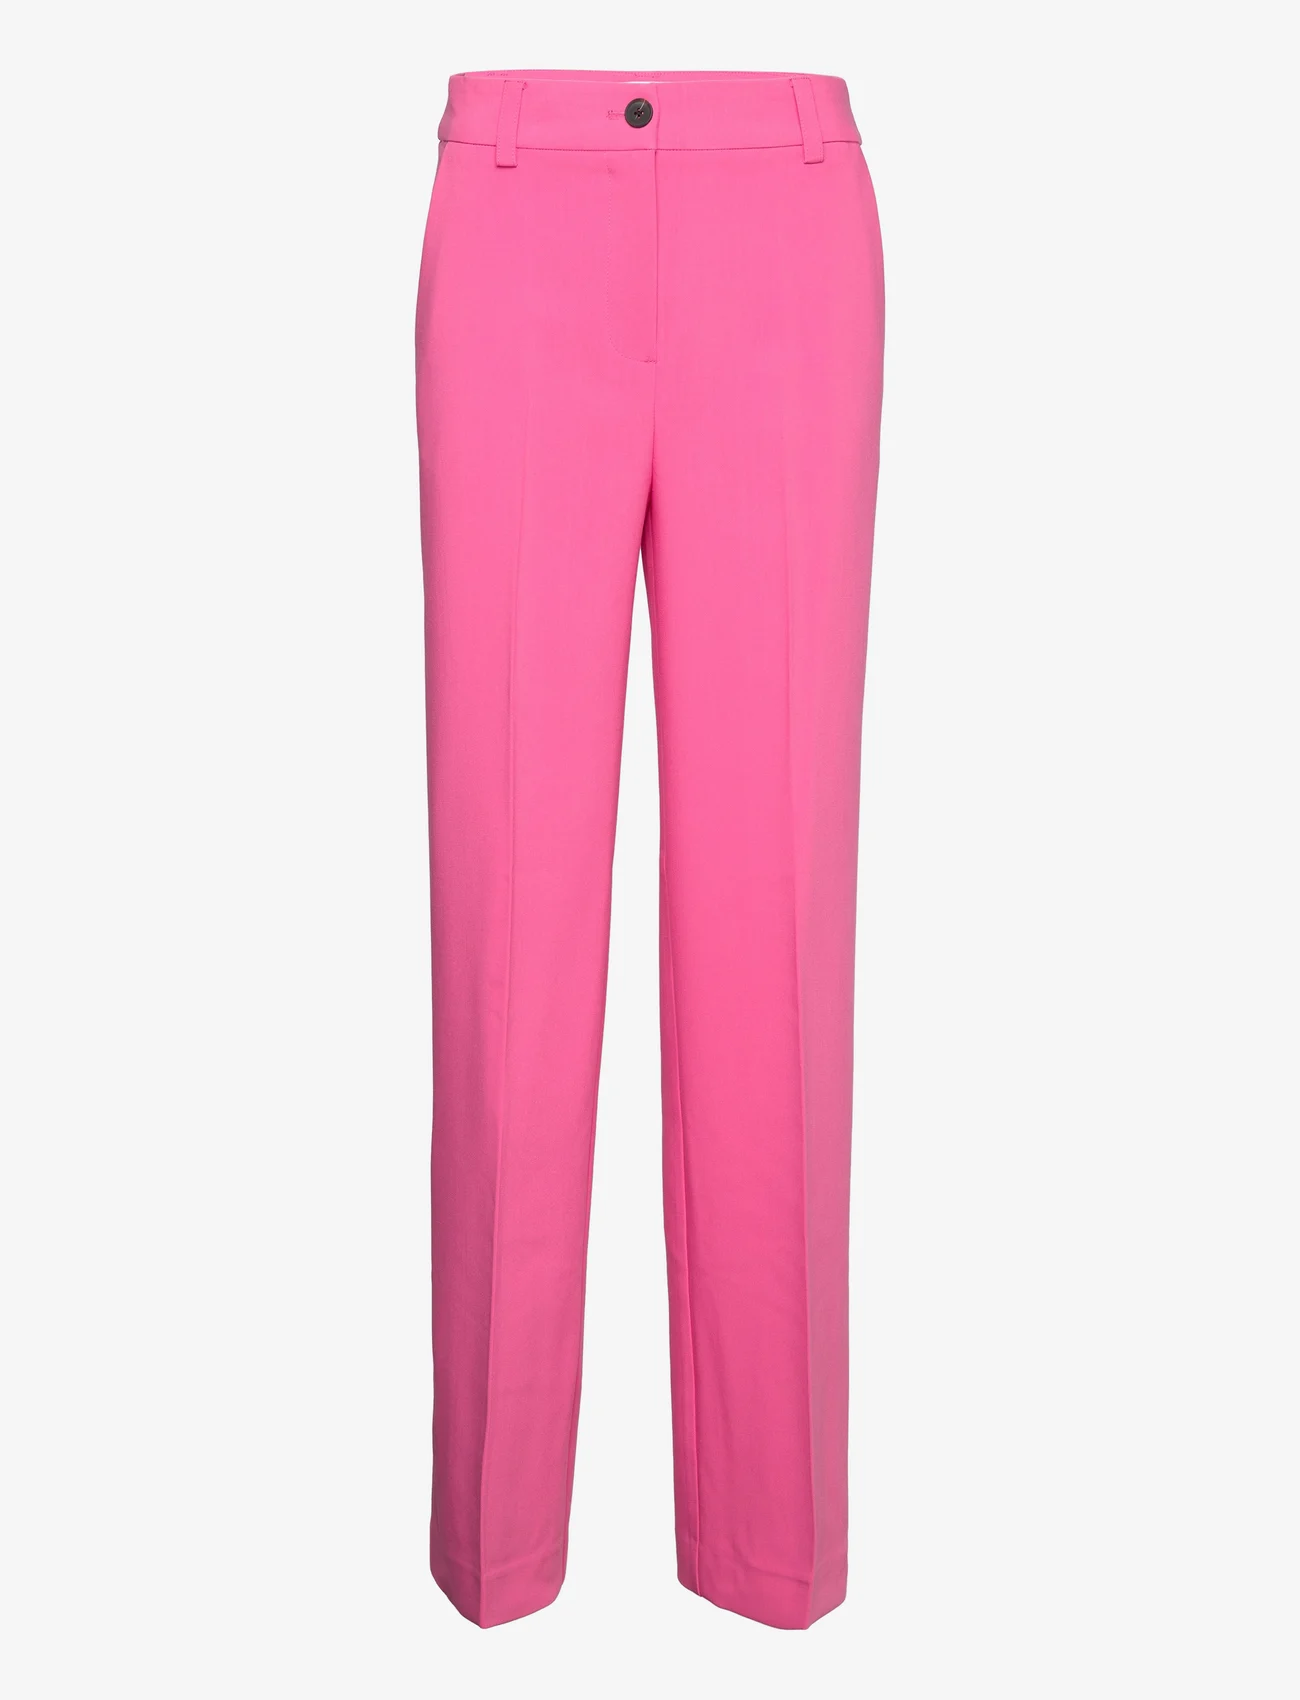 Modström - Gale pants - festklær til outlet-priser - taffy pink - 0